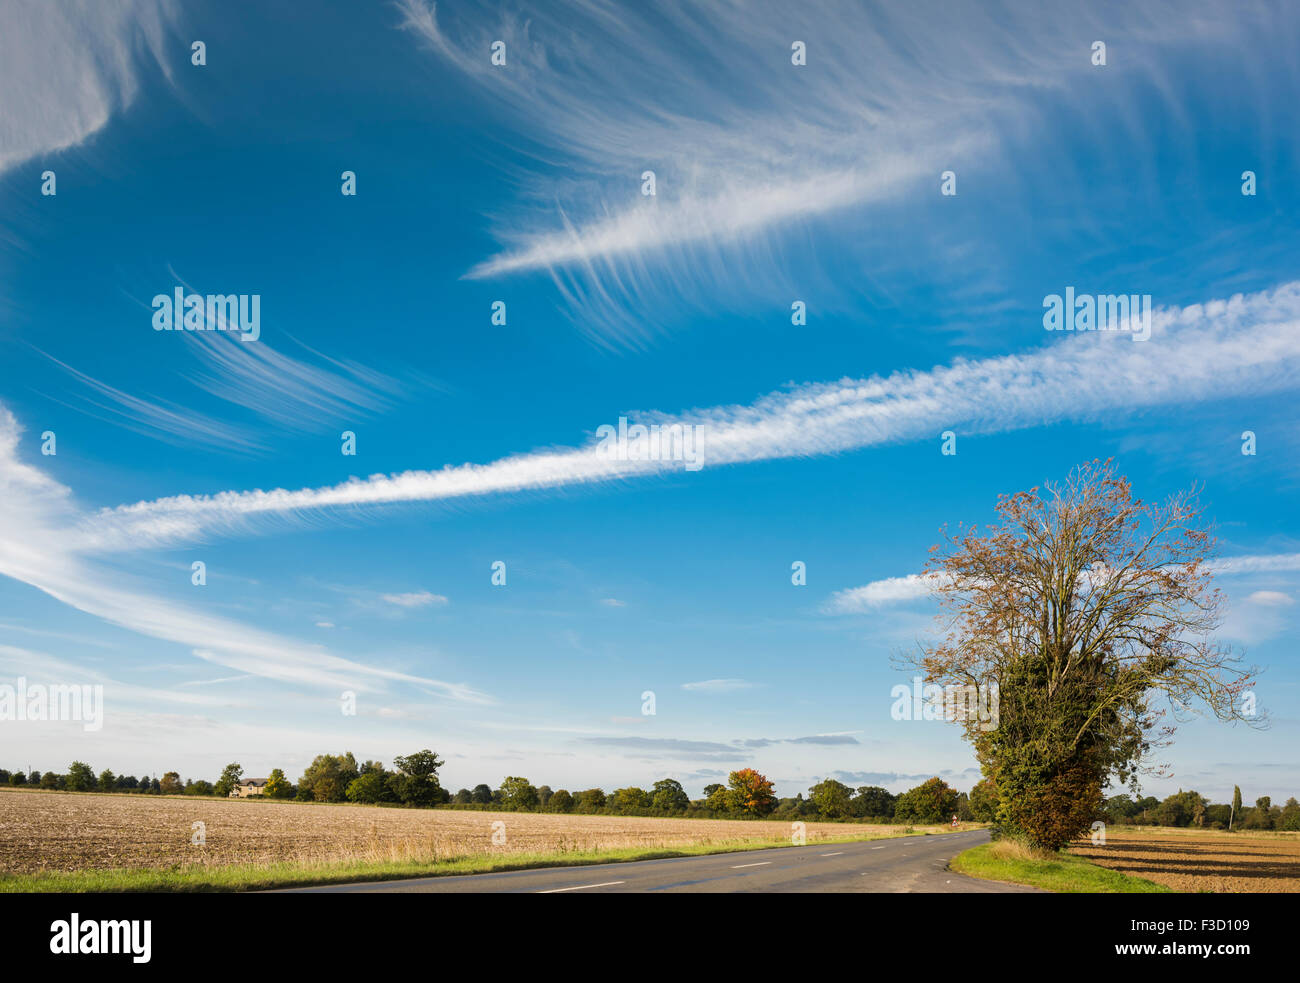 Les formations de nuages spectaculaires causés par des conditions atmosphériques inhabituelles sur les anglais fenlands près de Thorney, Cambridgeshire, Angleterre Banque D'Images